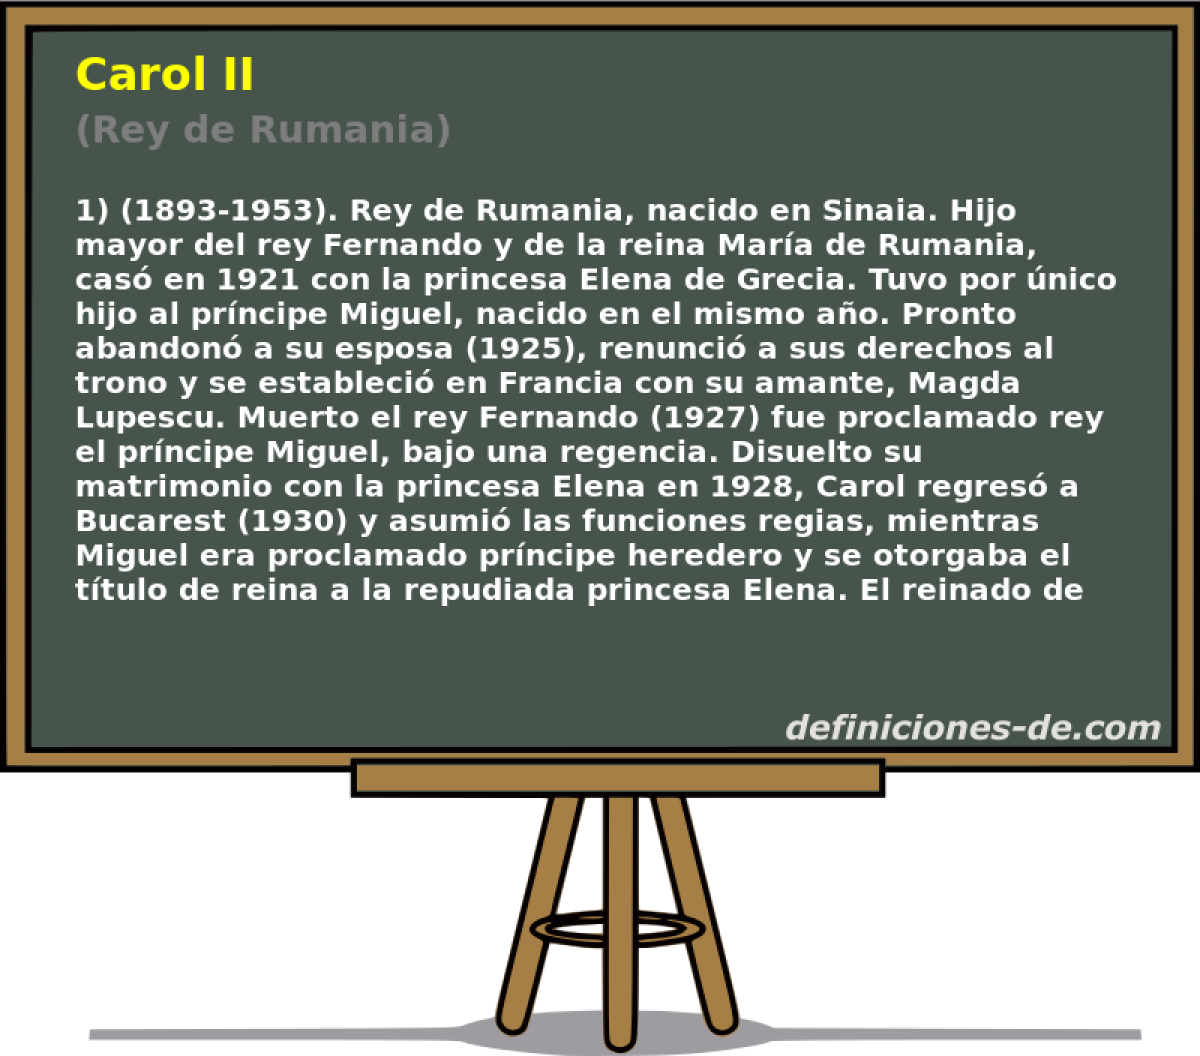 Carol II (Rey de Rumania)